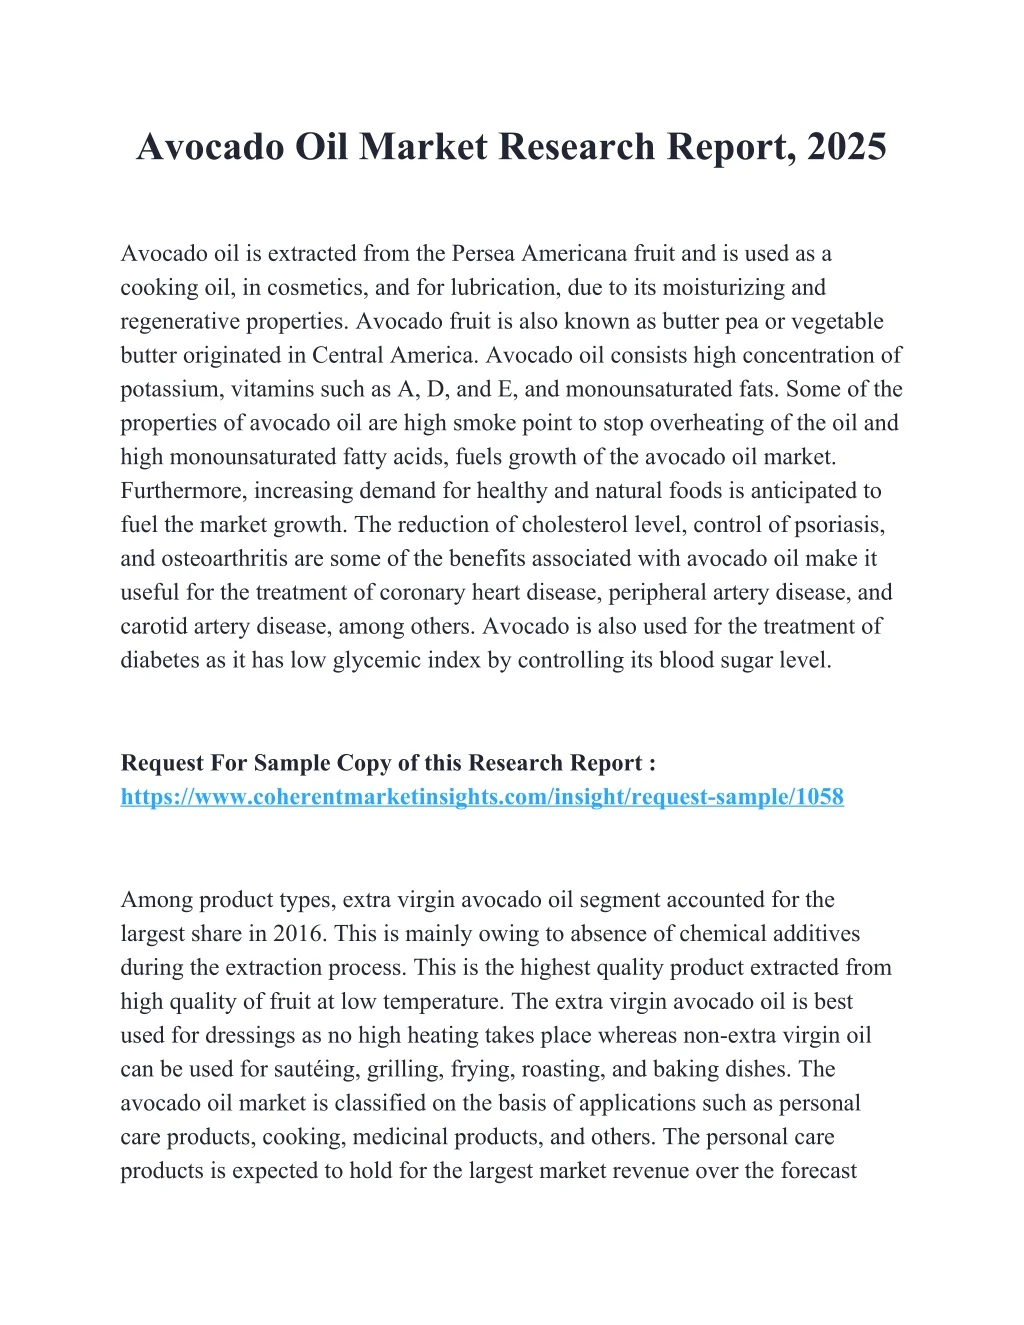 avocado oil market research report 2025